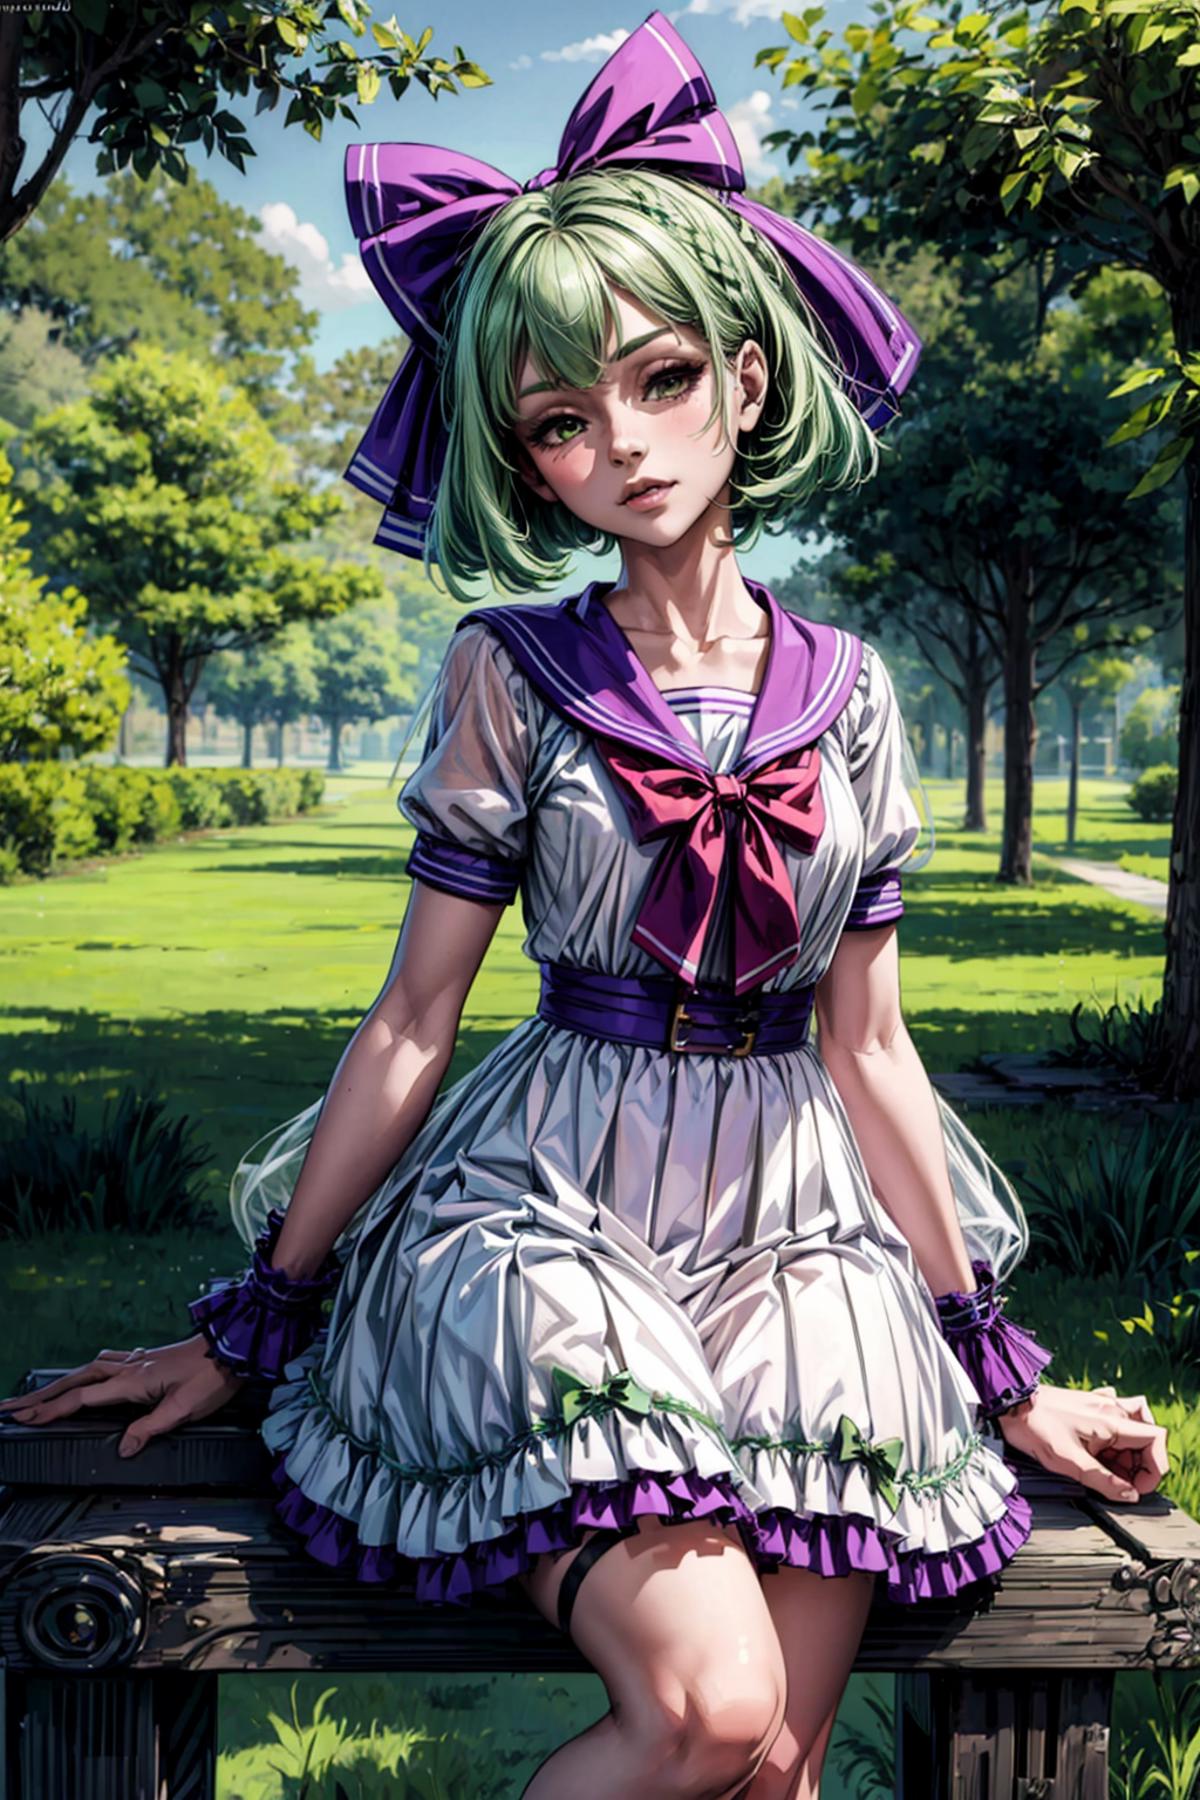 Green Short Hair Purple Bow Girl image by Blackzerker